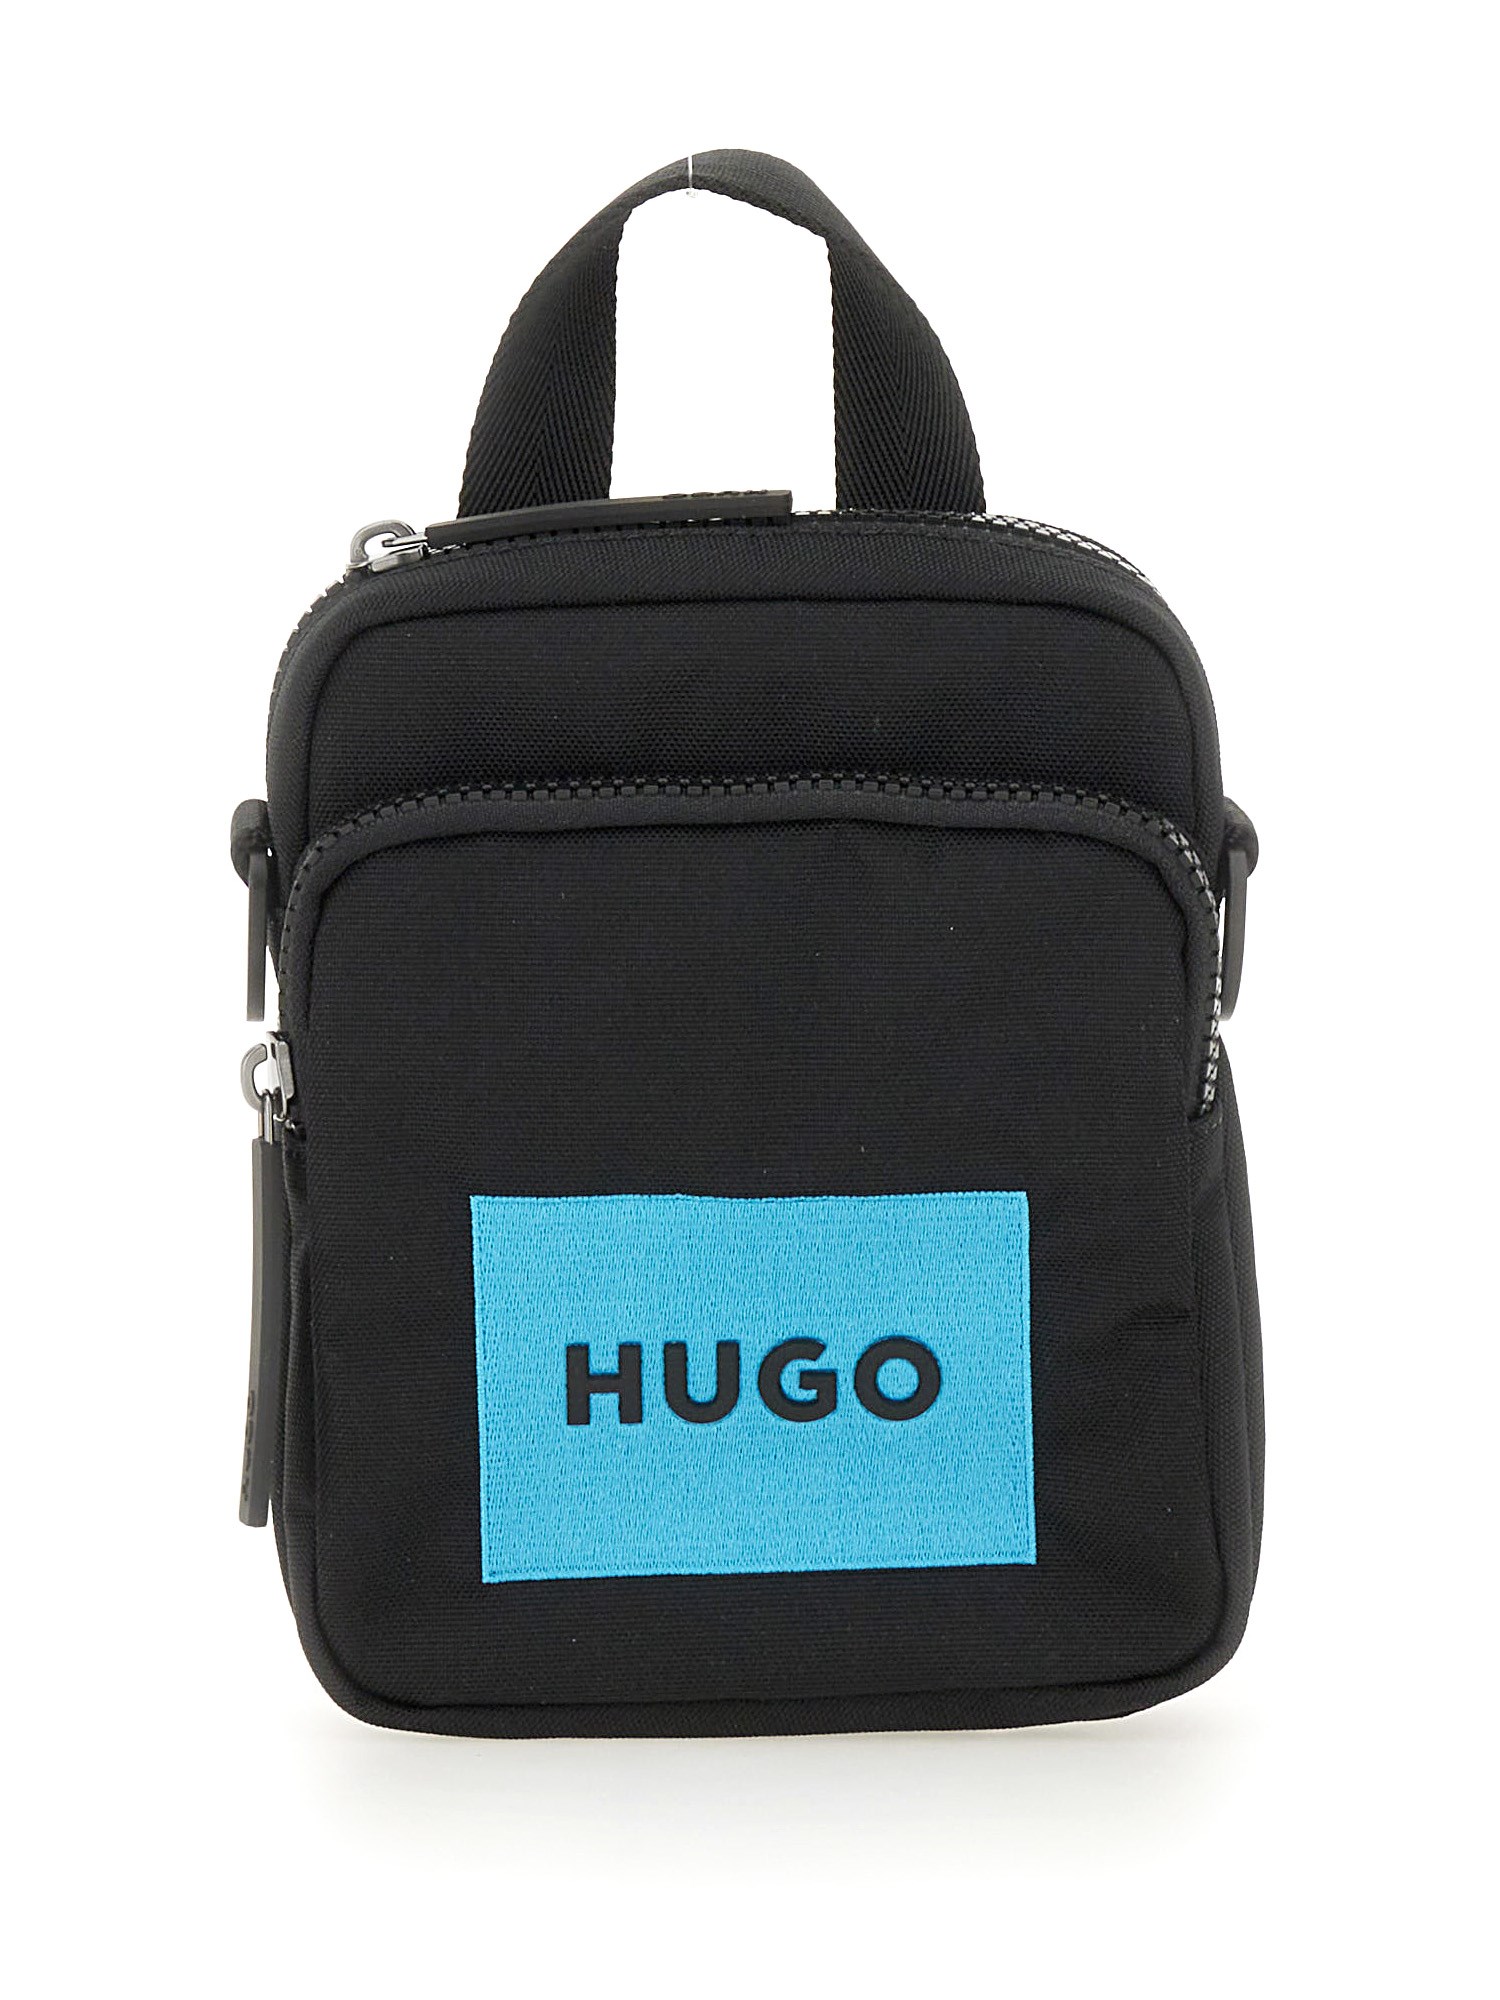 Hugo hugo shoulder bag with logo